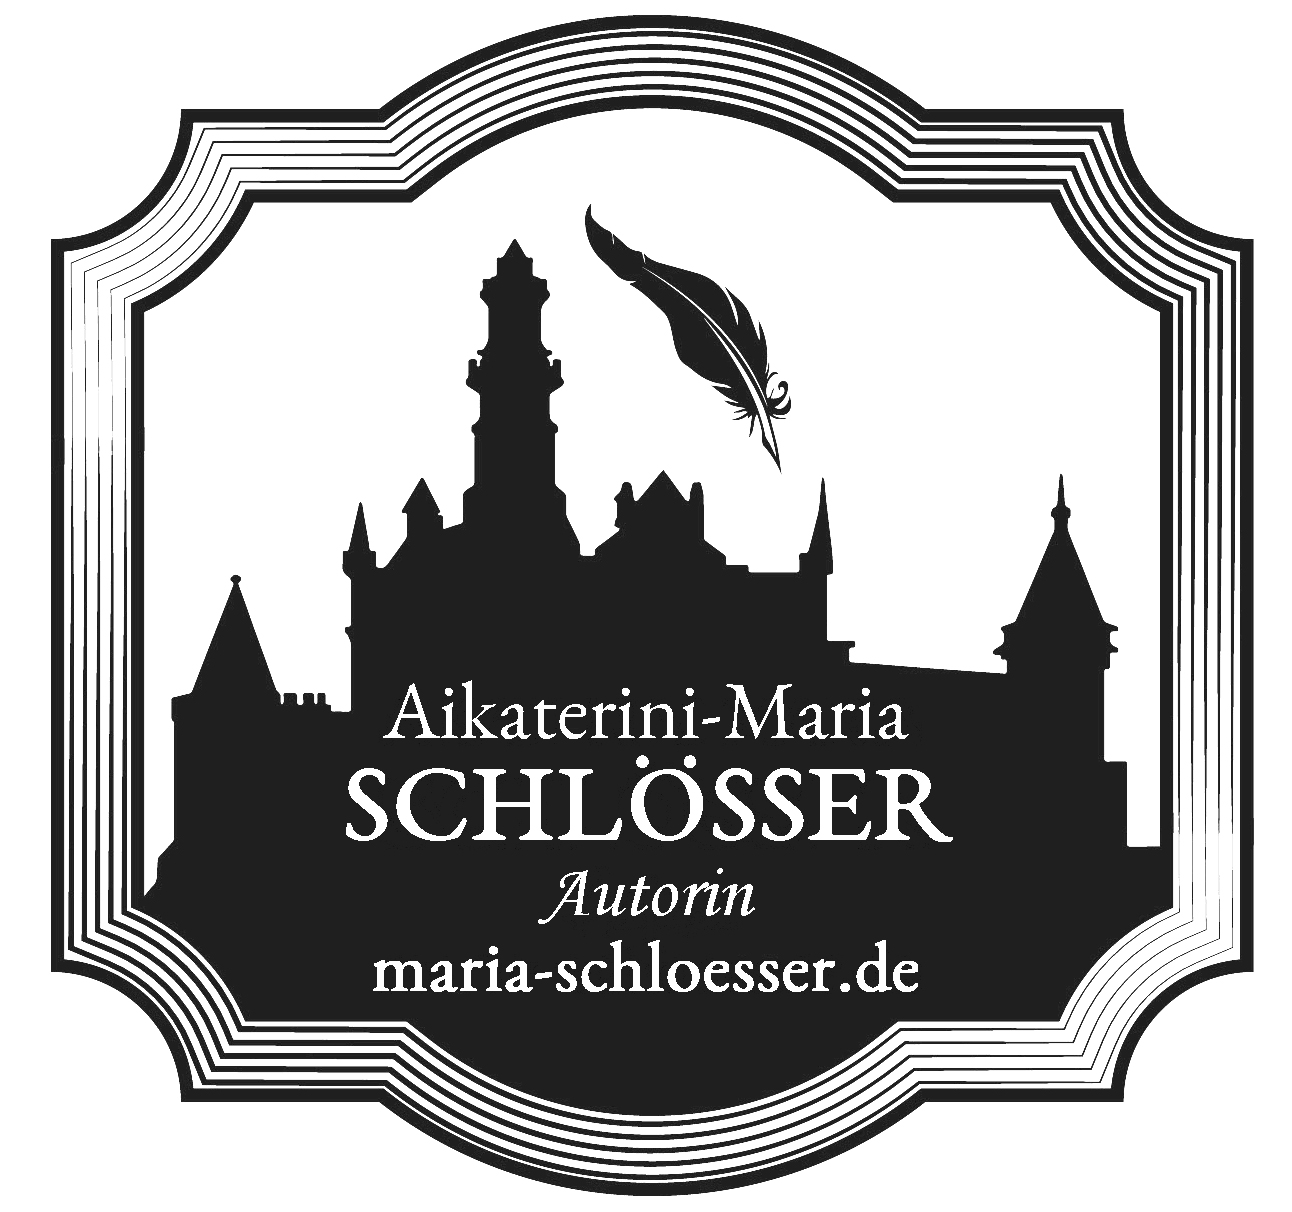 (c) Maria-schloesser.de